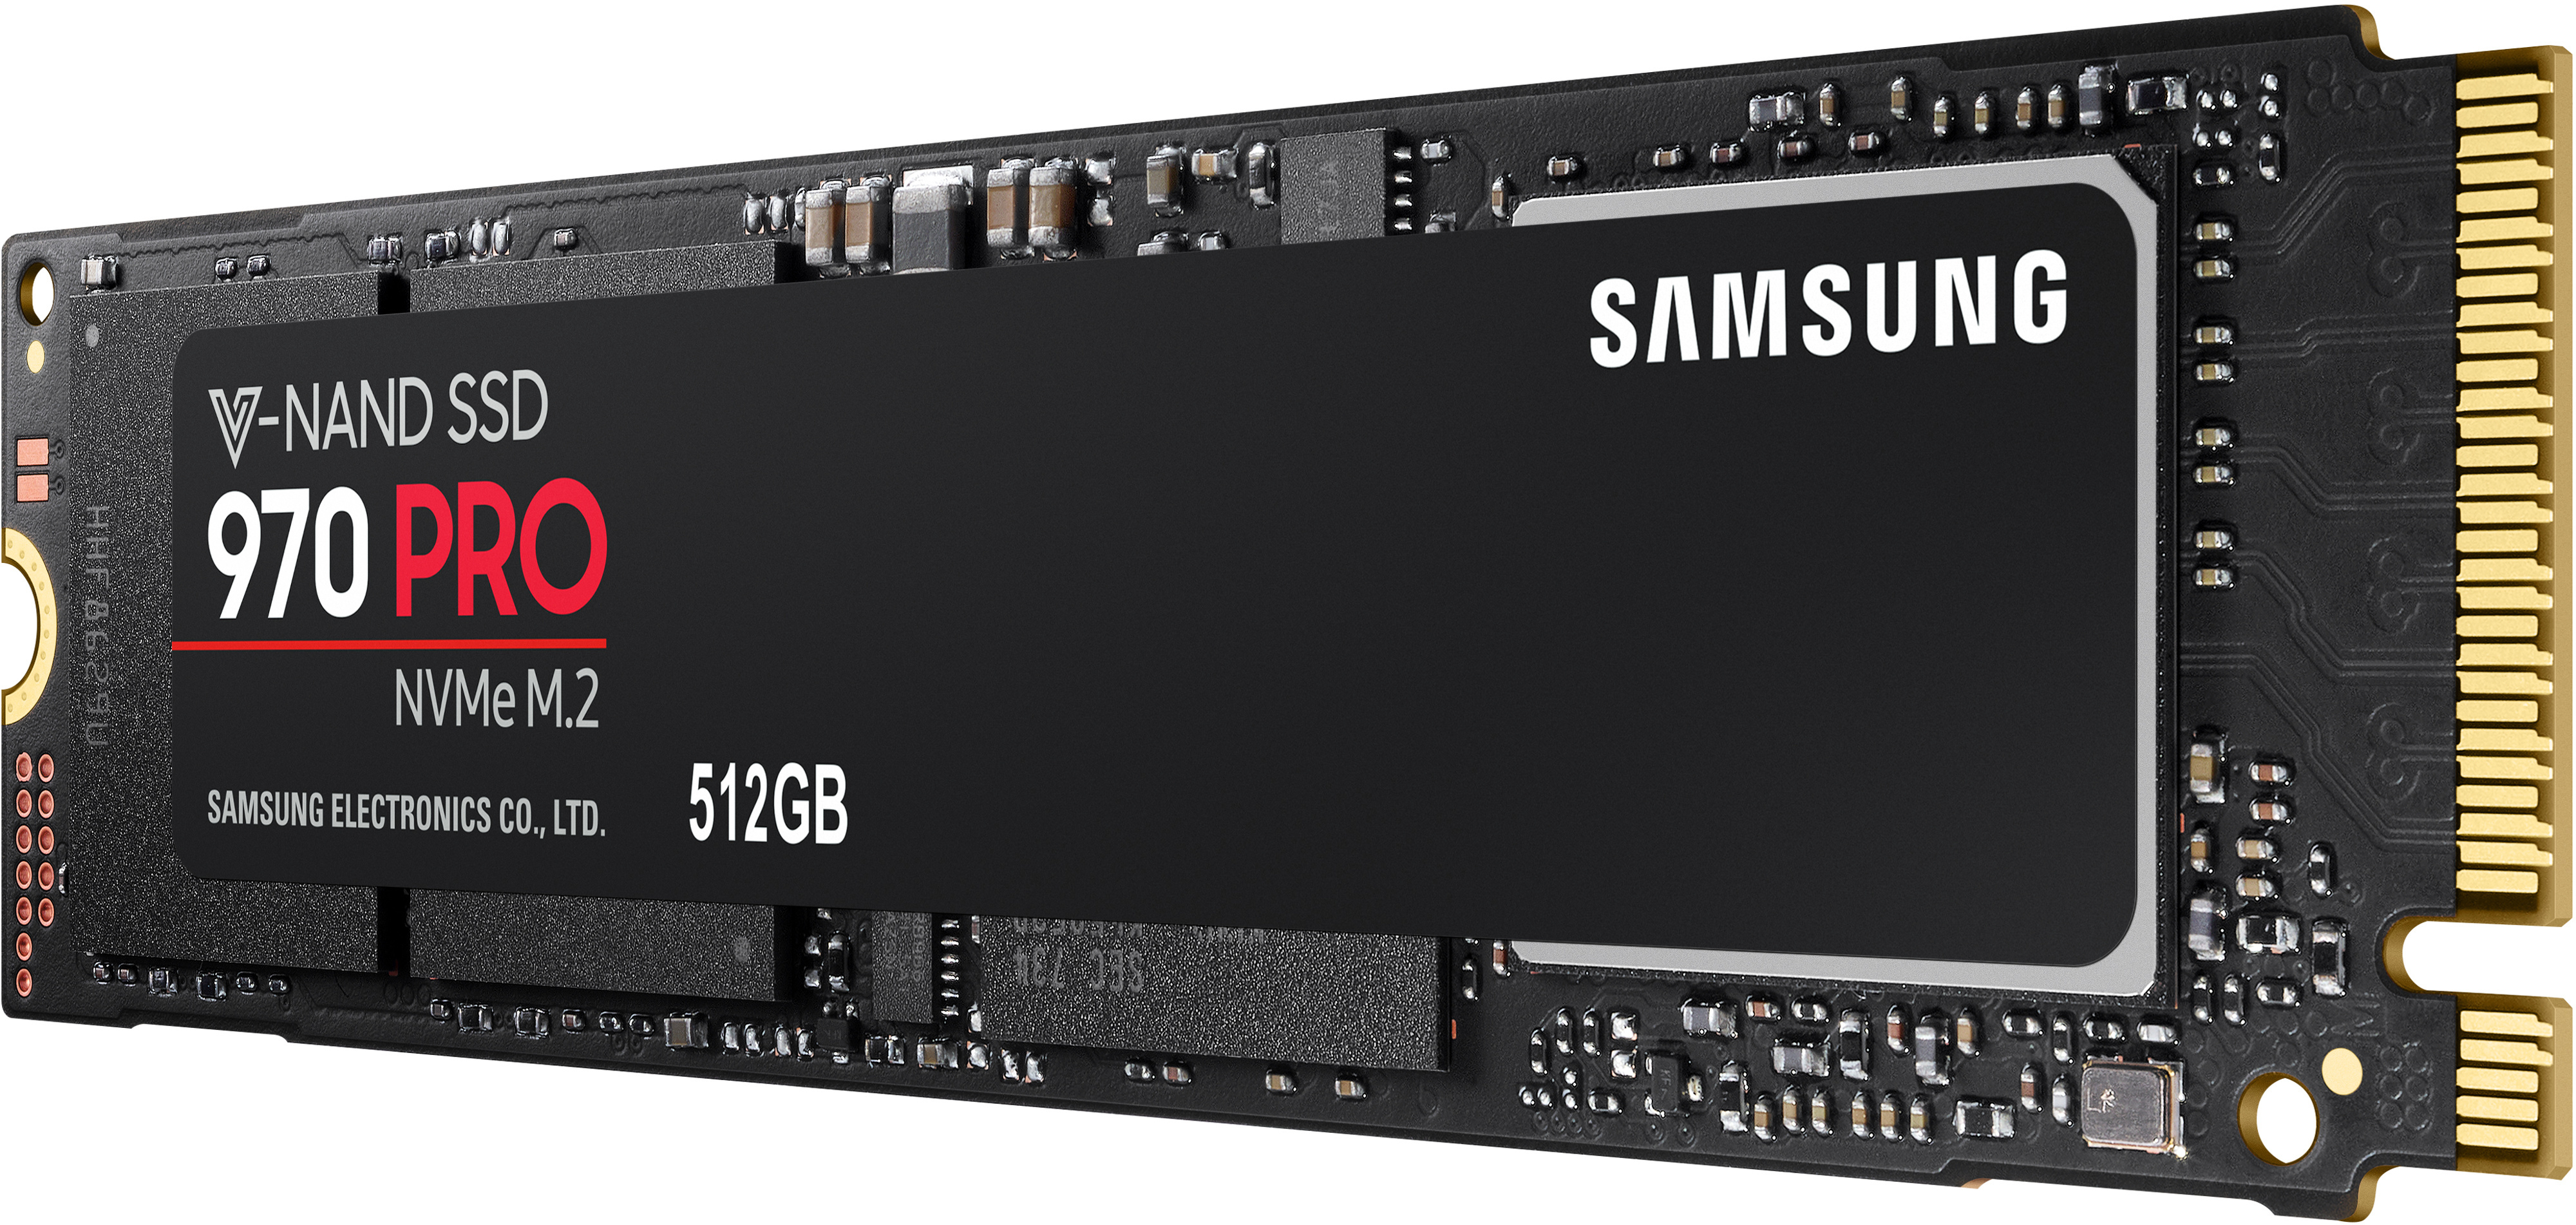 Mz v8v250bw. SSD m2 Samsung 970 EVO Plus. Samsung SSD 970 EVO Plus 250gb. Накопитель SSD 500гб m.2 накопитель Samsung 970 EVO Plus MZ-v7s500bw. Samsung 970 EVO Plus SSD 500gb - m.2 NVME.